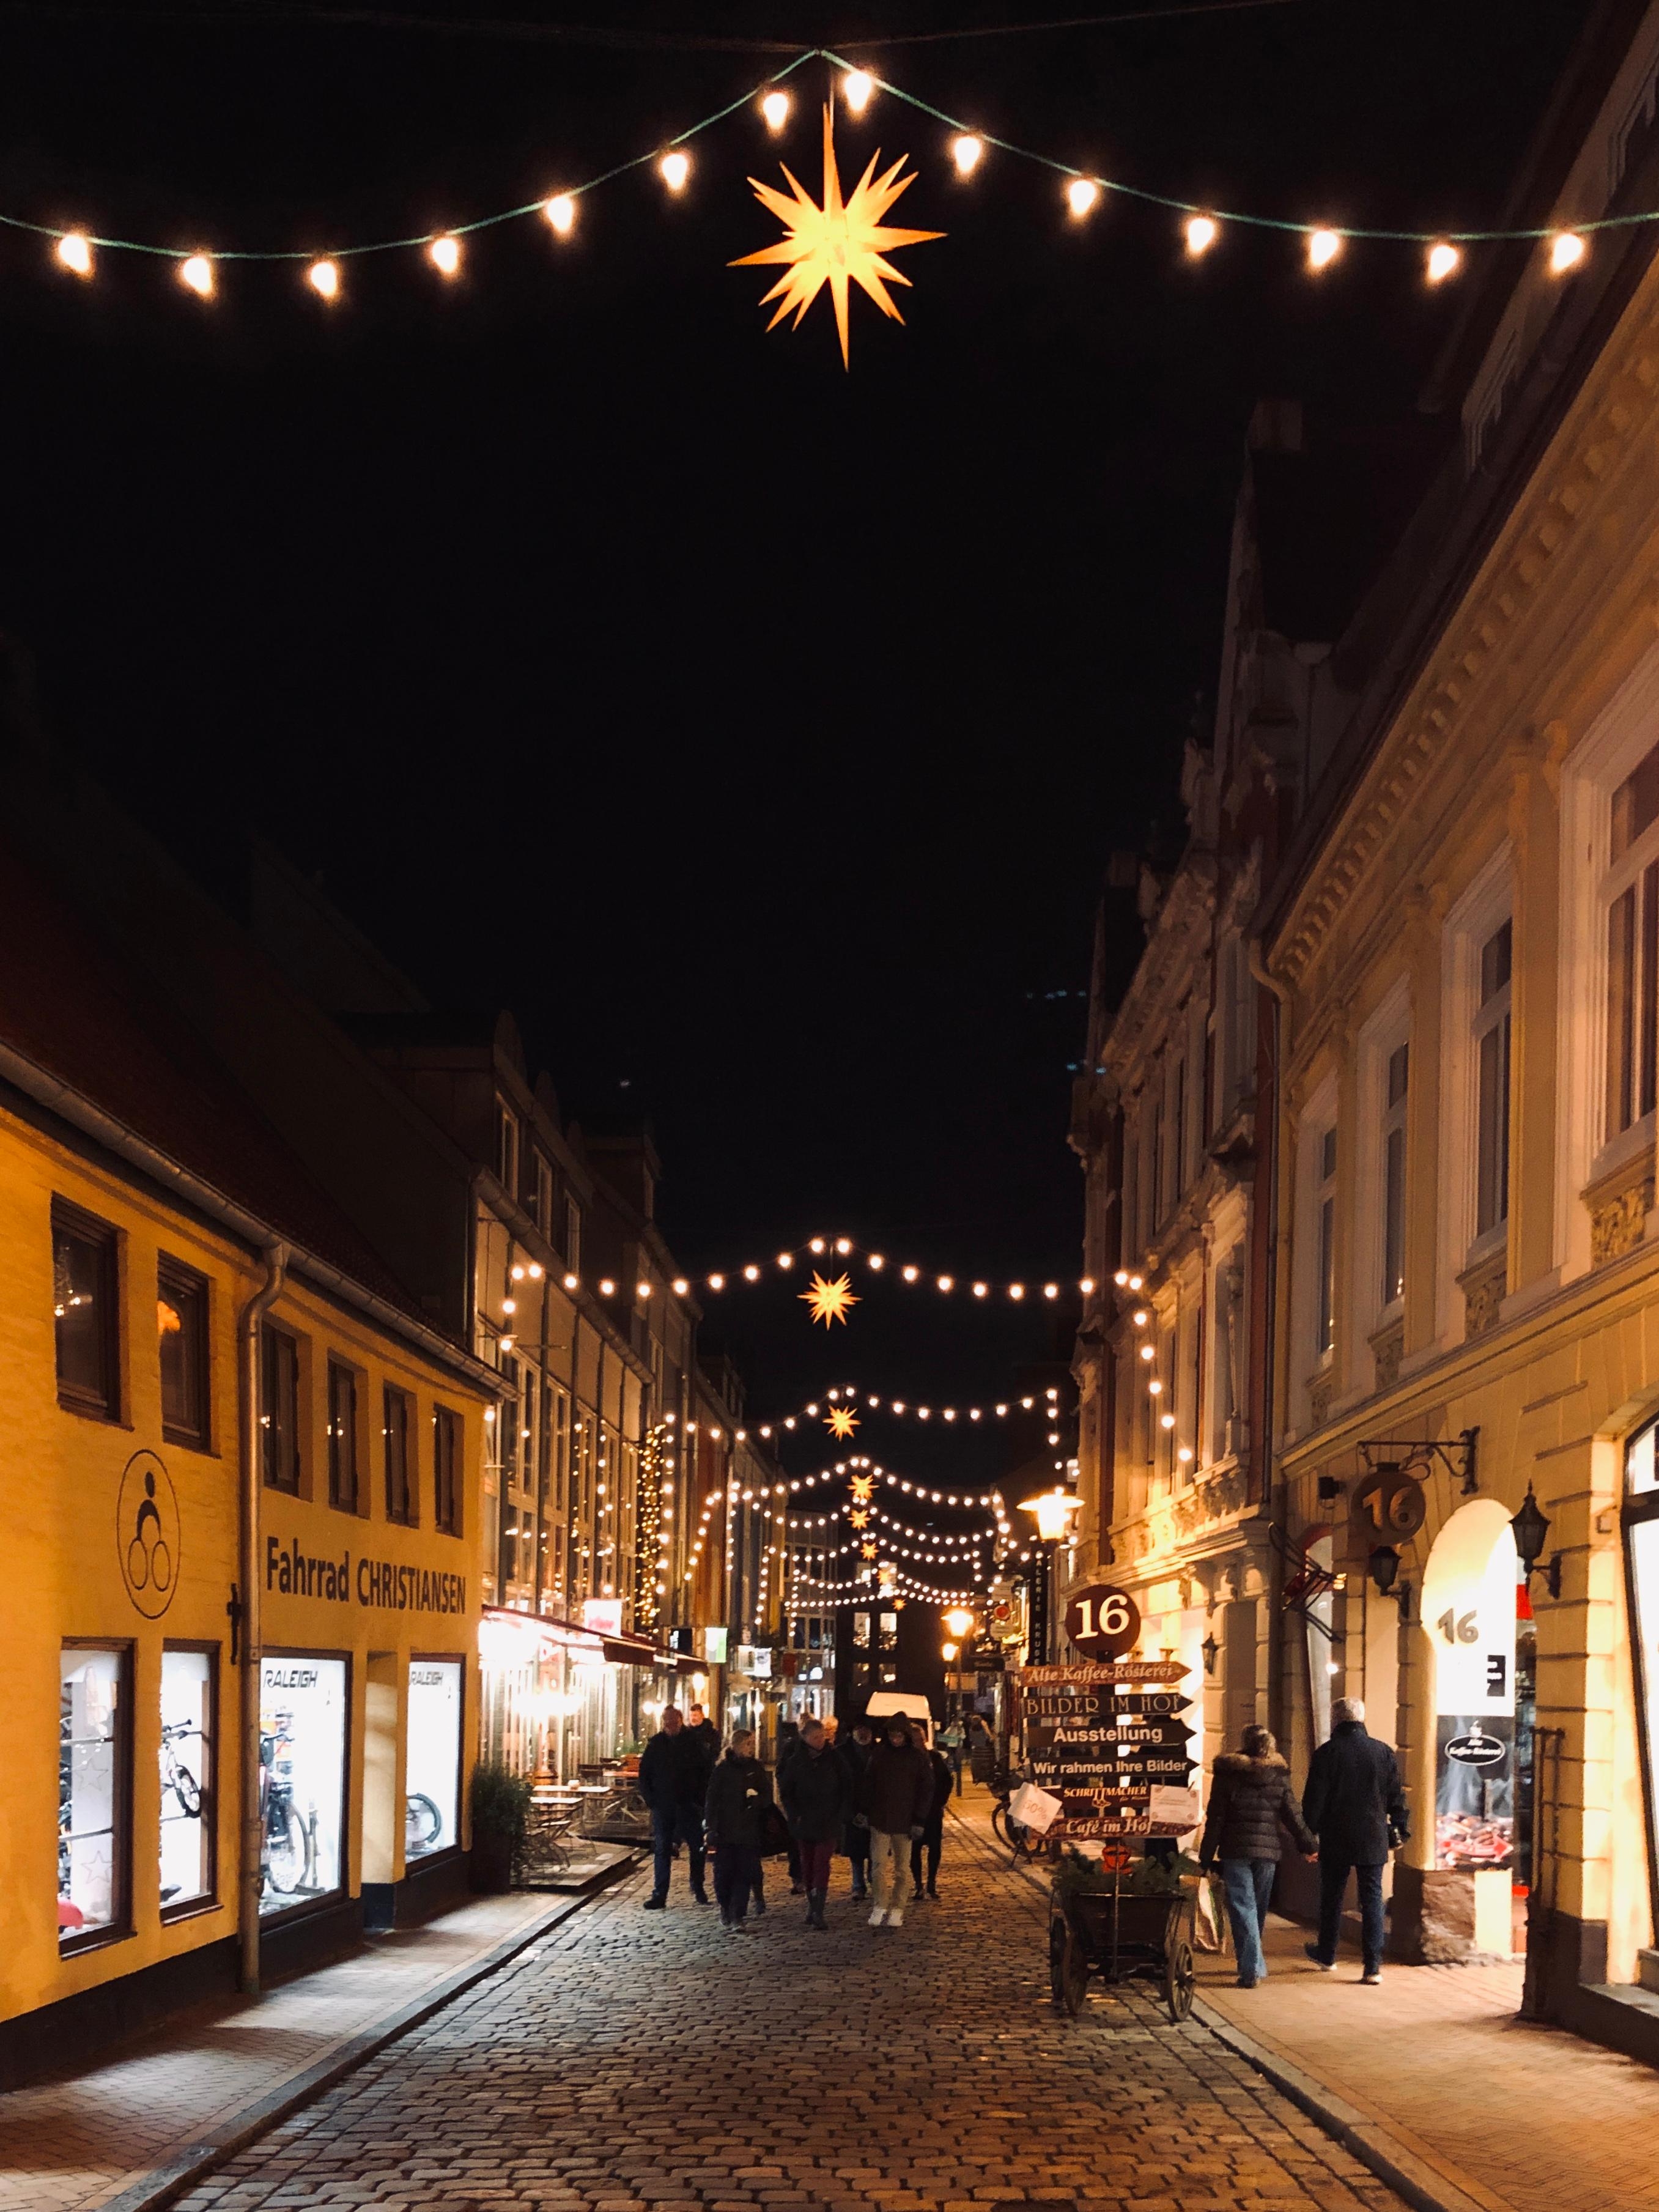 Christmas lights 🌟
#homesweethome #rotestrasse #flensburg